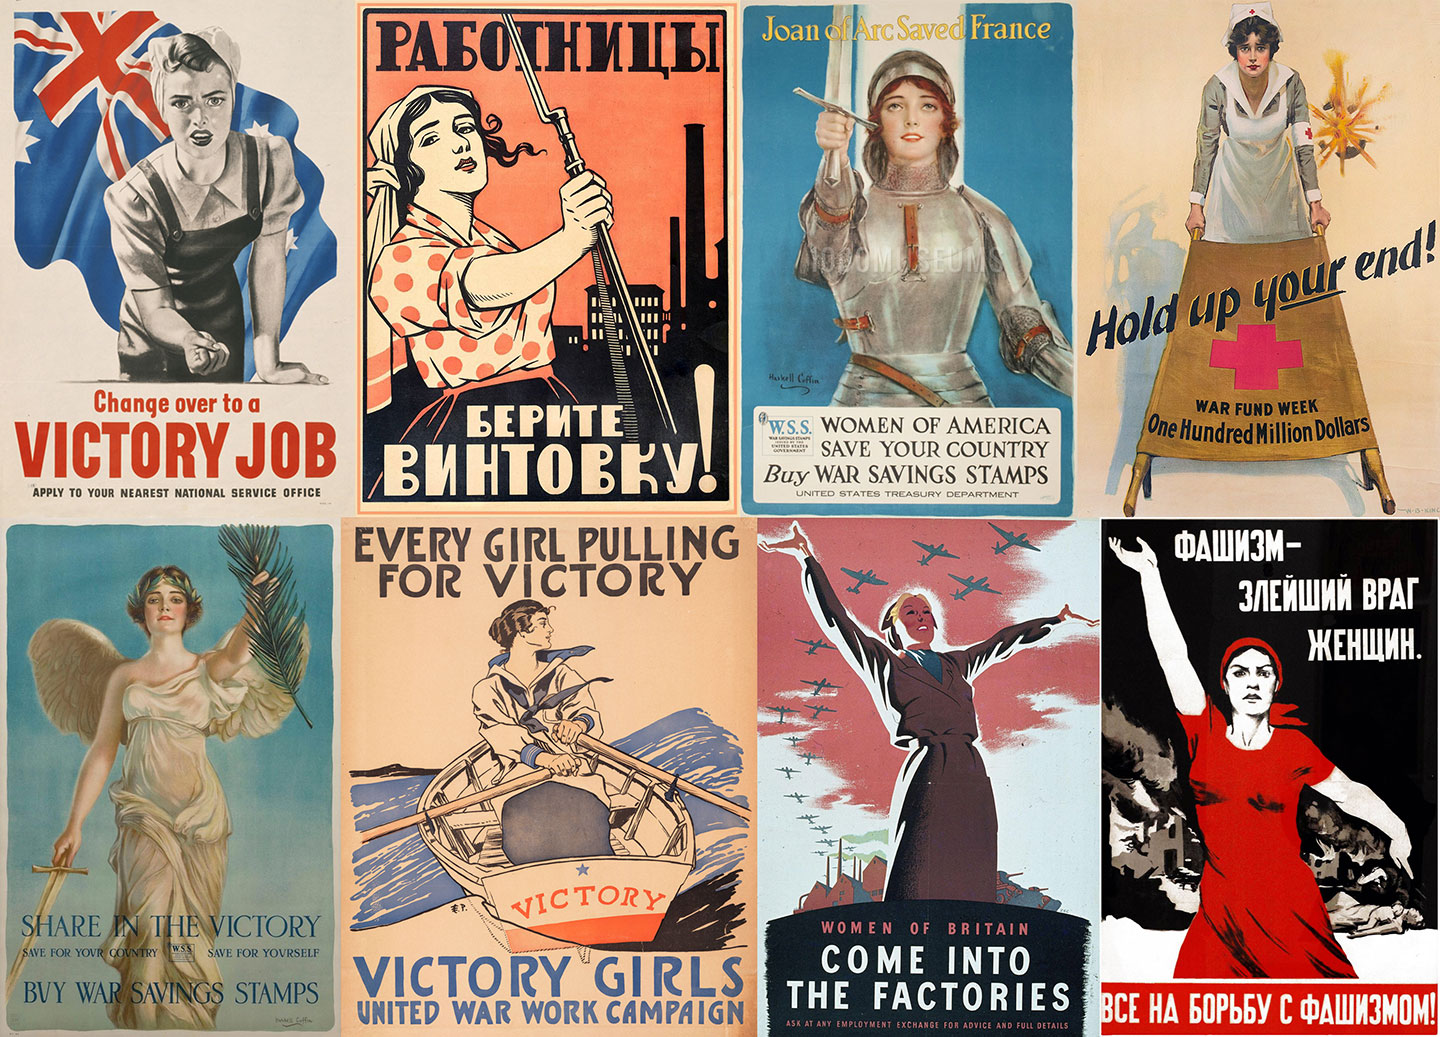 Historic propaganda posters